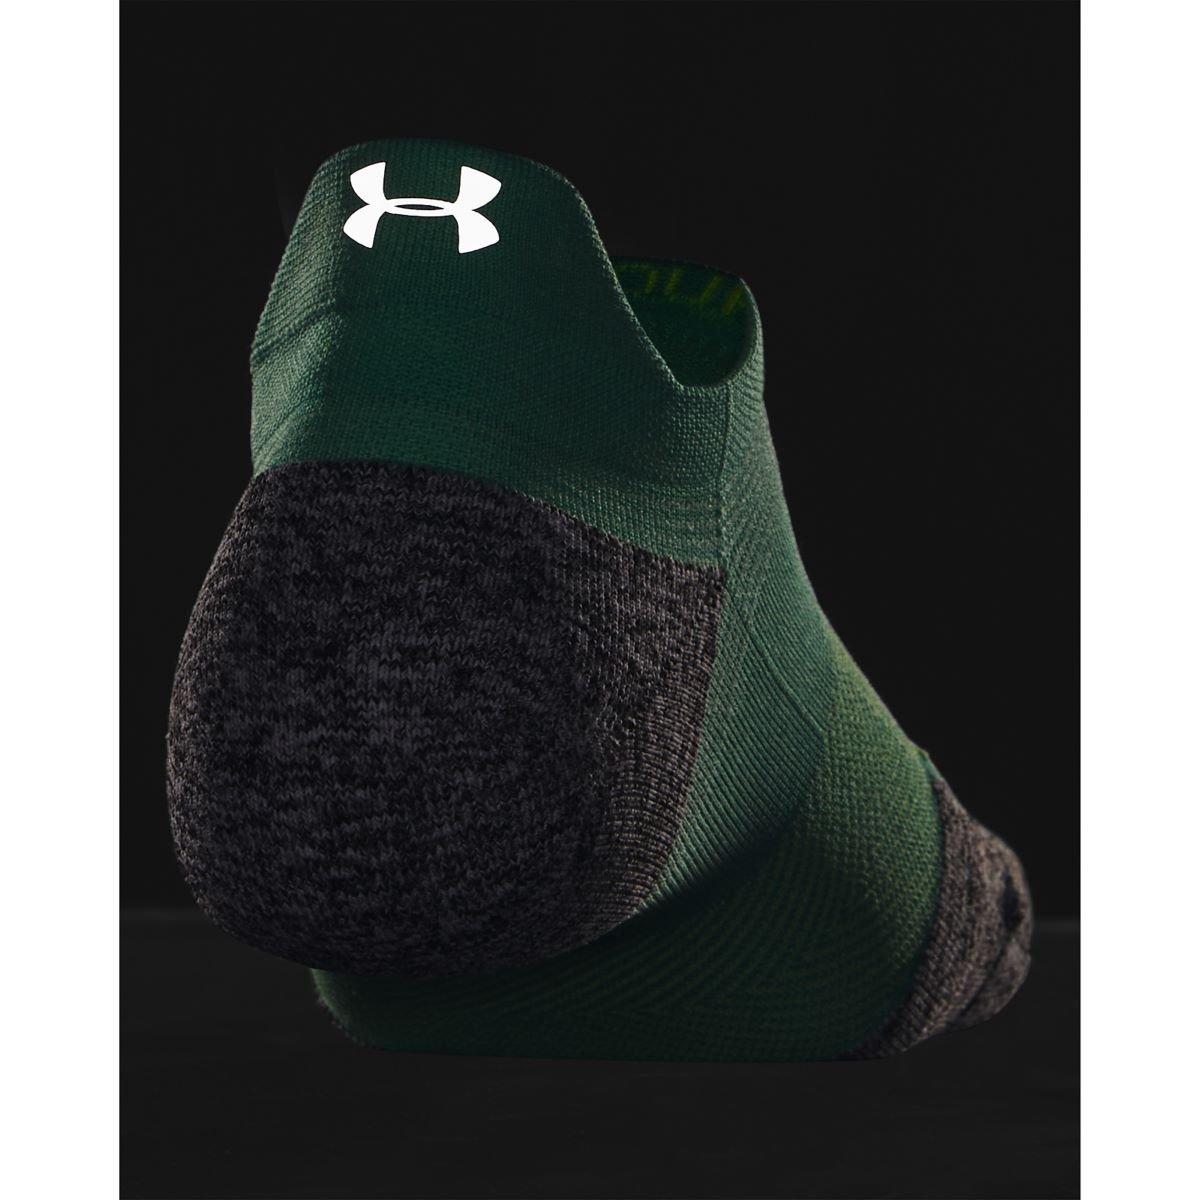 Ponožky Under Armour AD Run Cushion 1ks NS Tab - zelená/sivá